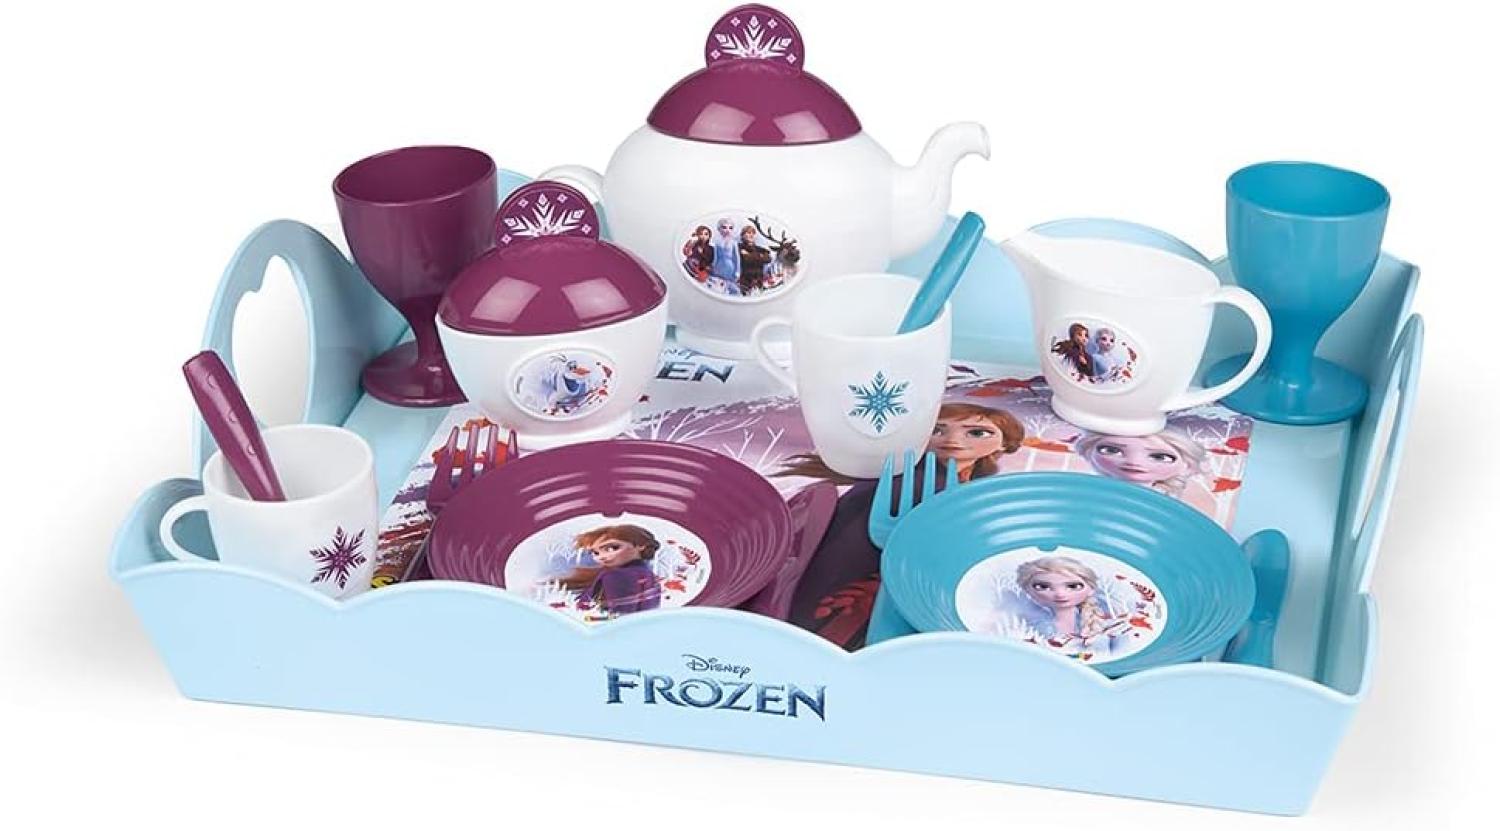 Frozen 2 Serviertablett, Disney Frozen Tablett mit Geschirr, für Kinder ab 3 Jahren Bild 1